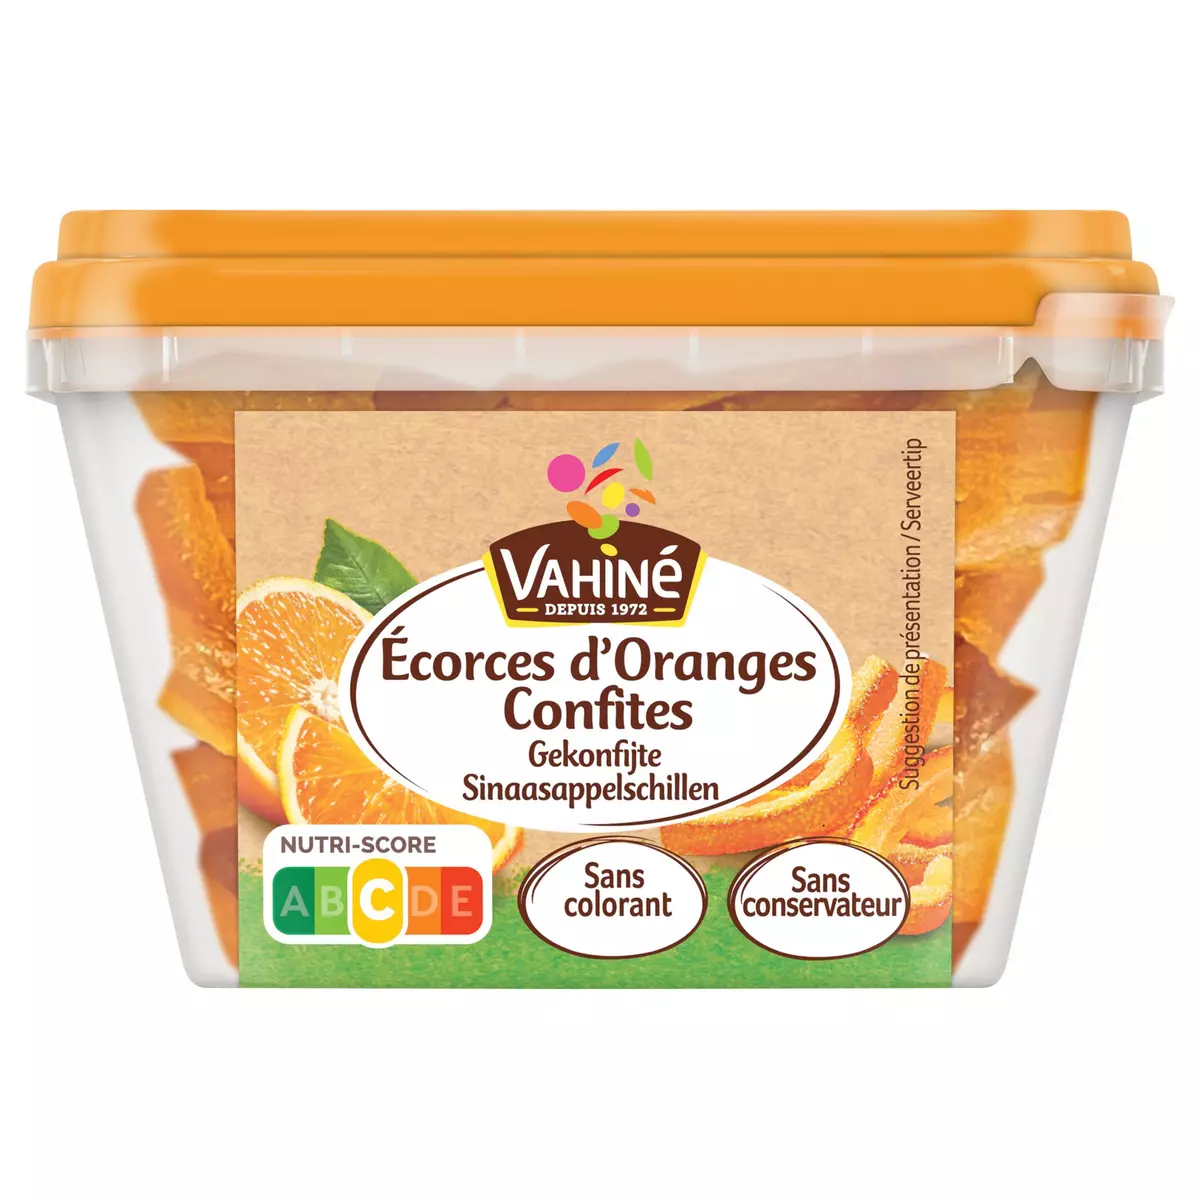 VAHINE Ecorces d'oranges confites 100g